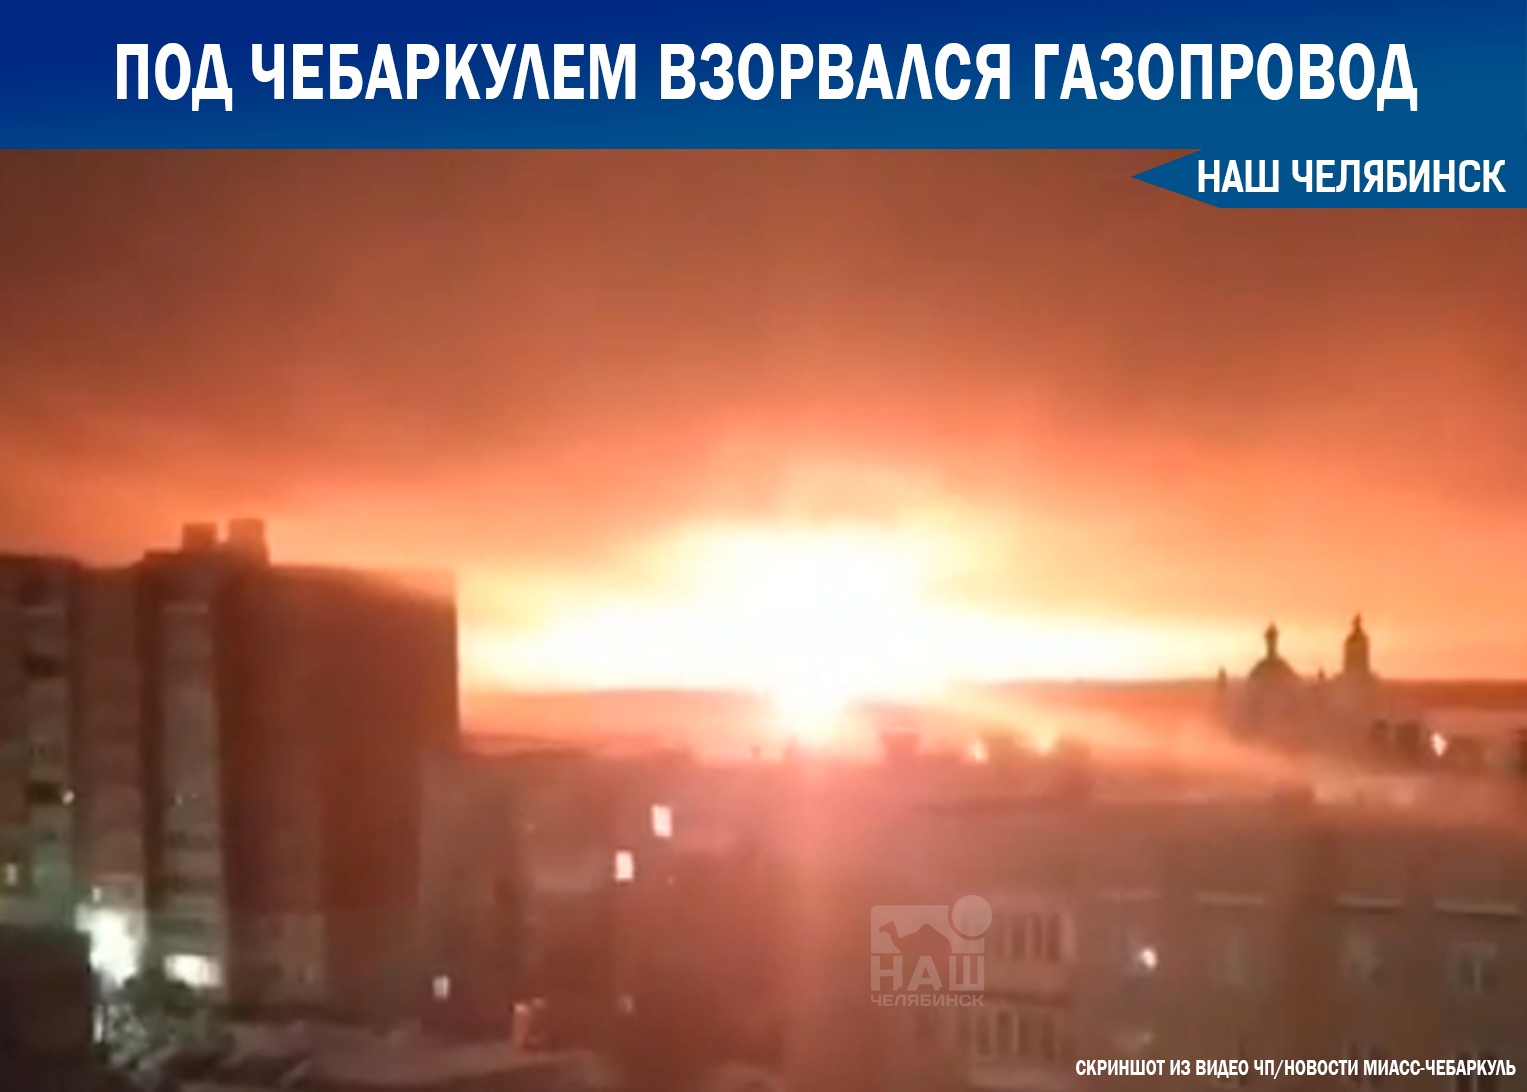 Как будто солнце взошло. Столб пламени в десятки метров осветил трассу М-5 под Челябинском — так горел газопровод